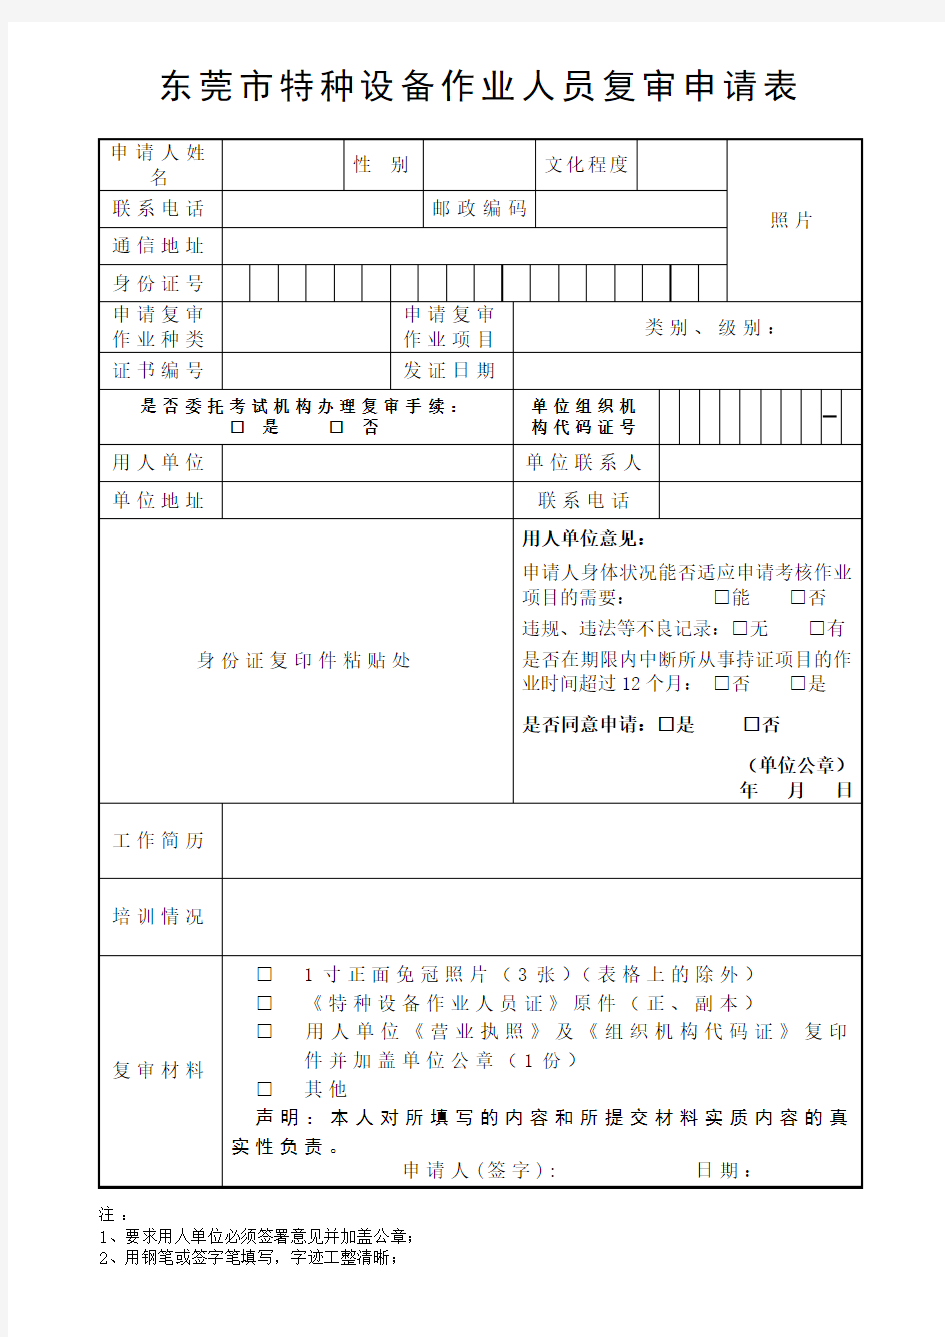 东莞特种设备作业人员复审申请表